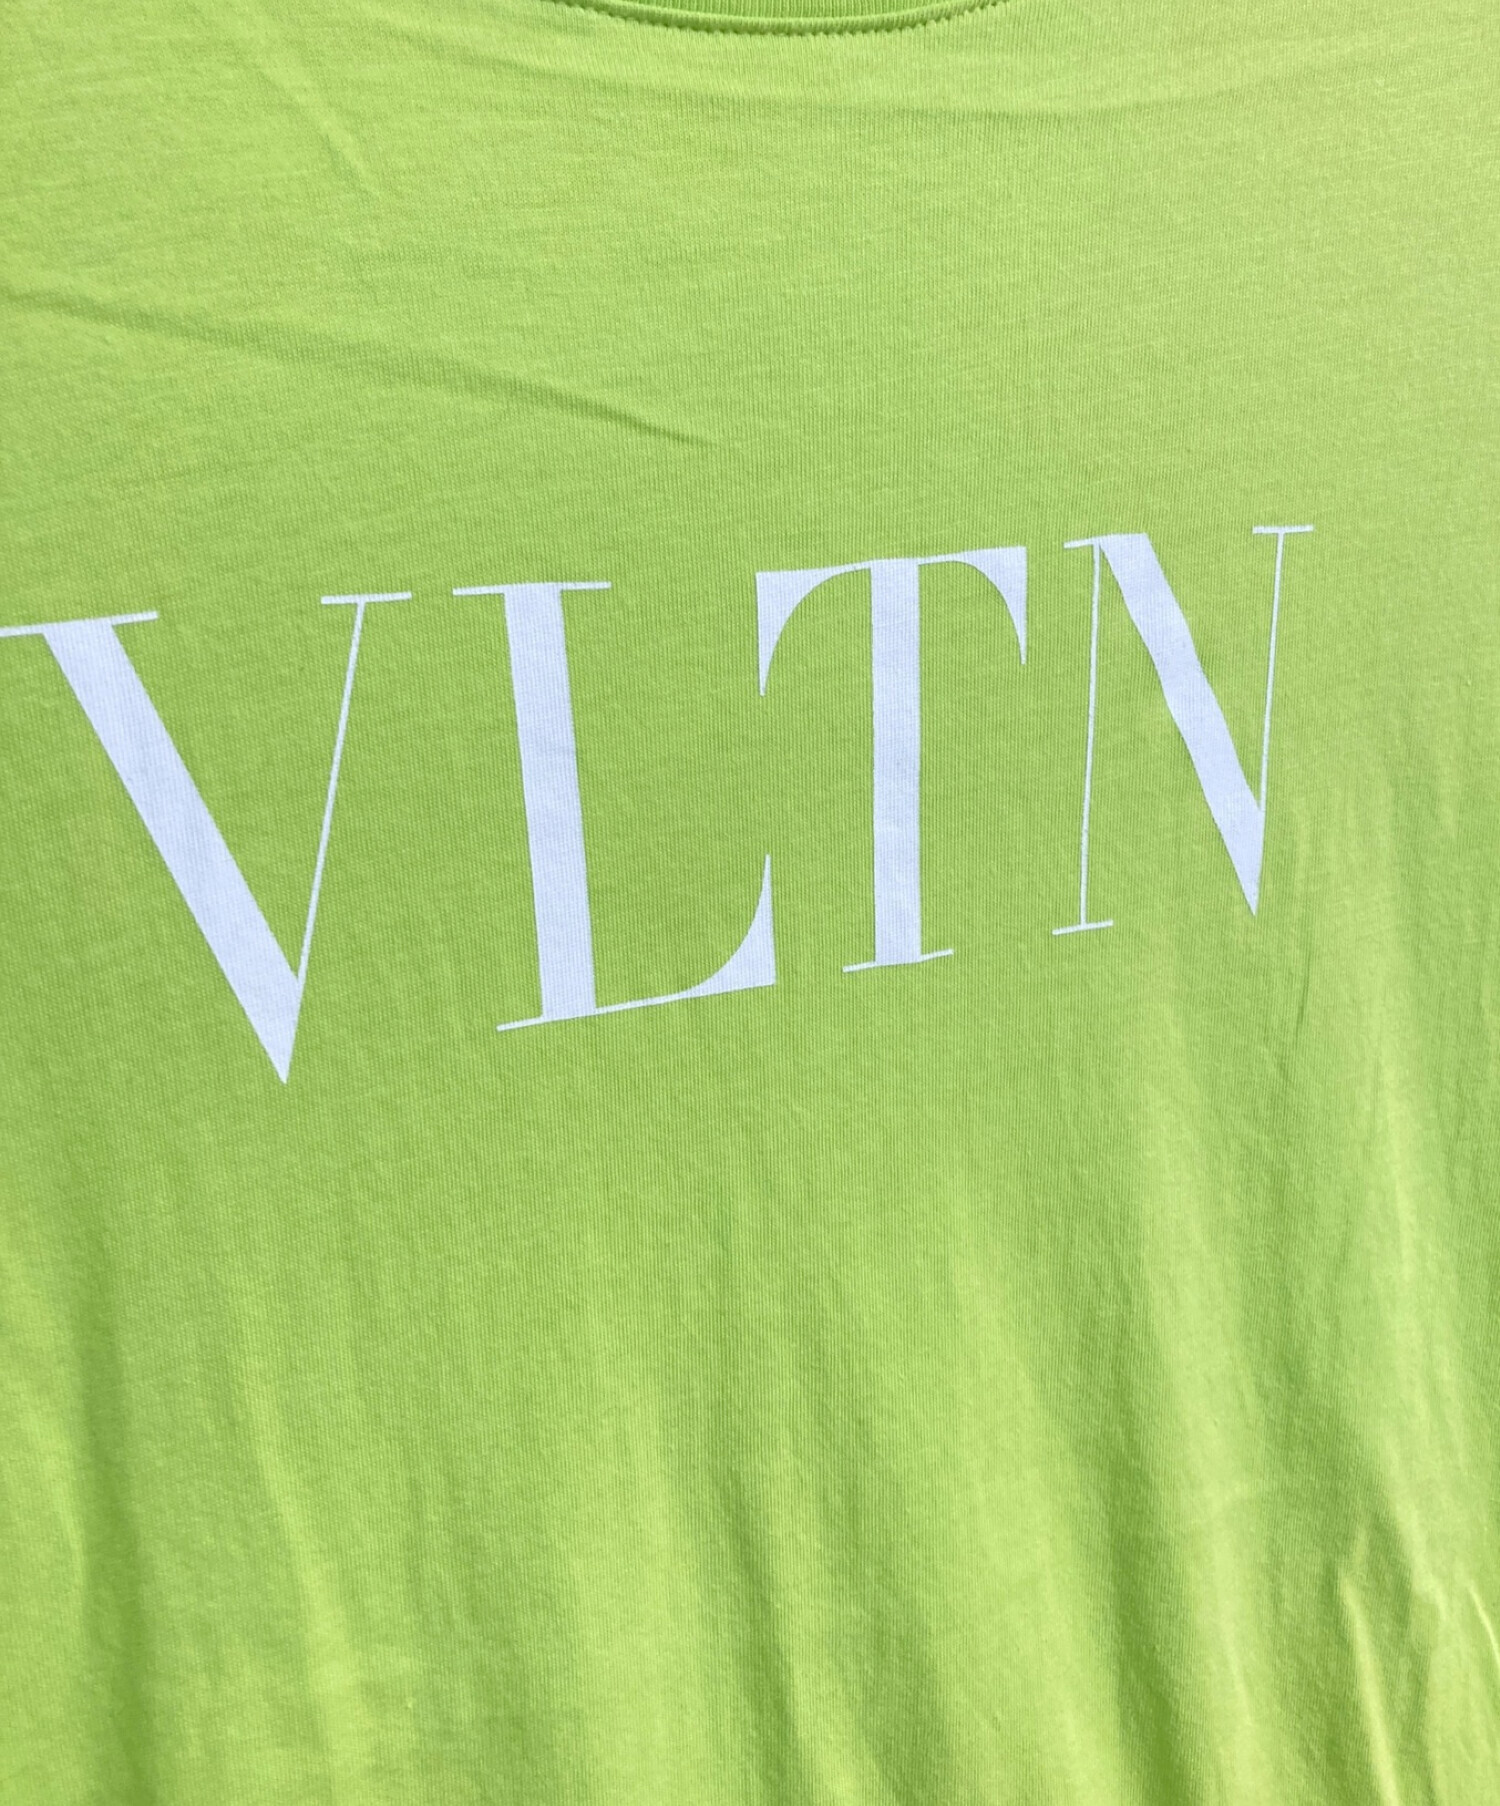 ヴァレンチノ  WV3MG10V7LL VLTNロゴ総柄プリントTシャツ メンズ XL